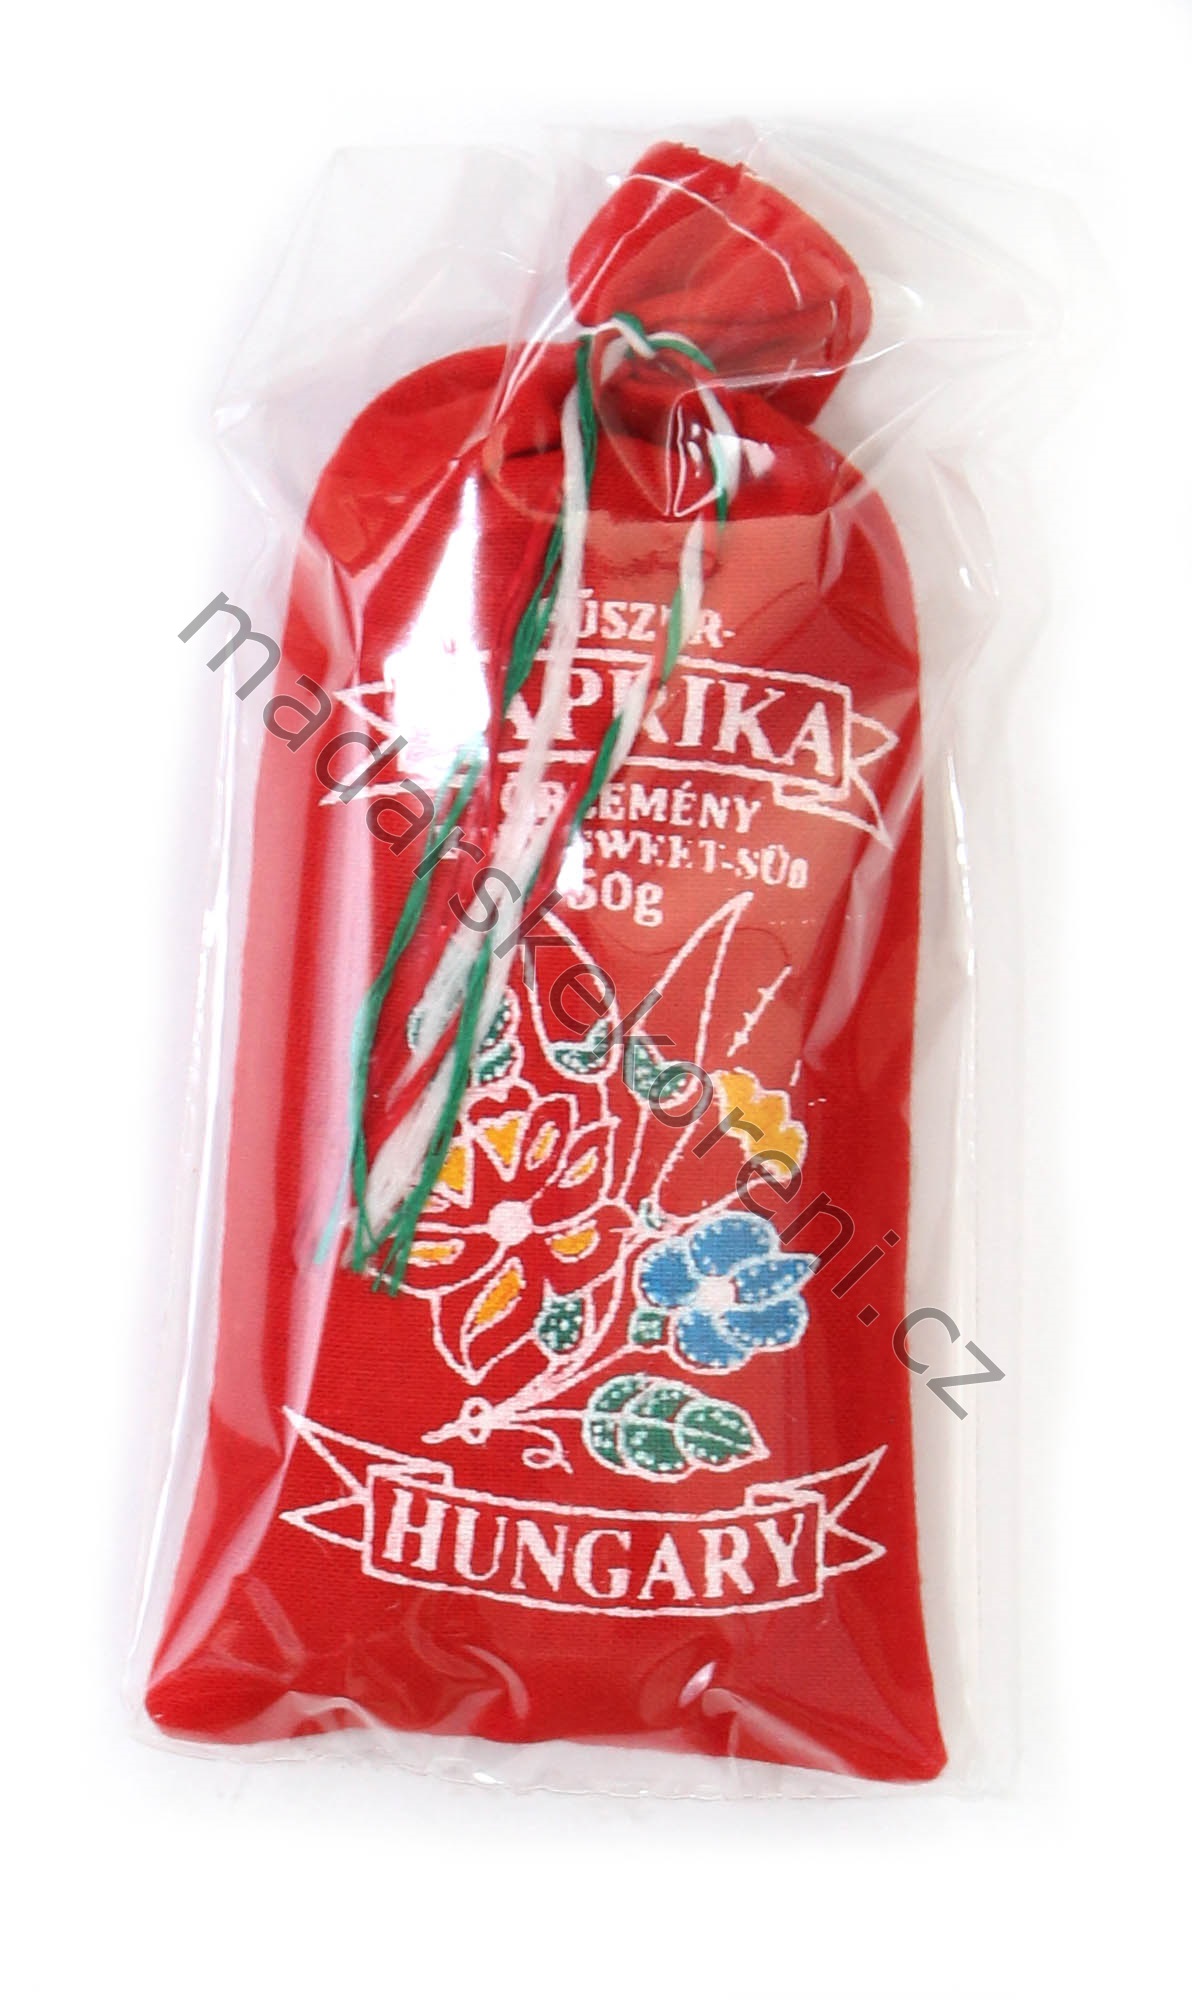 Maďarská paprika sladká v lněném pytlíku - 50g